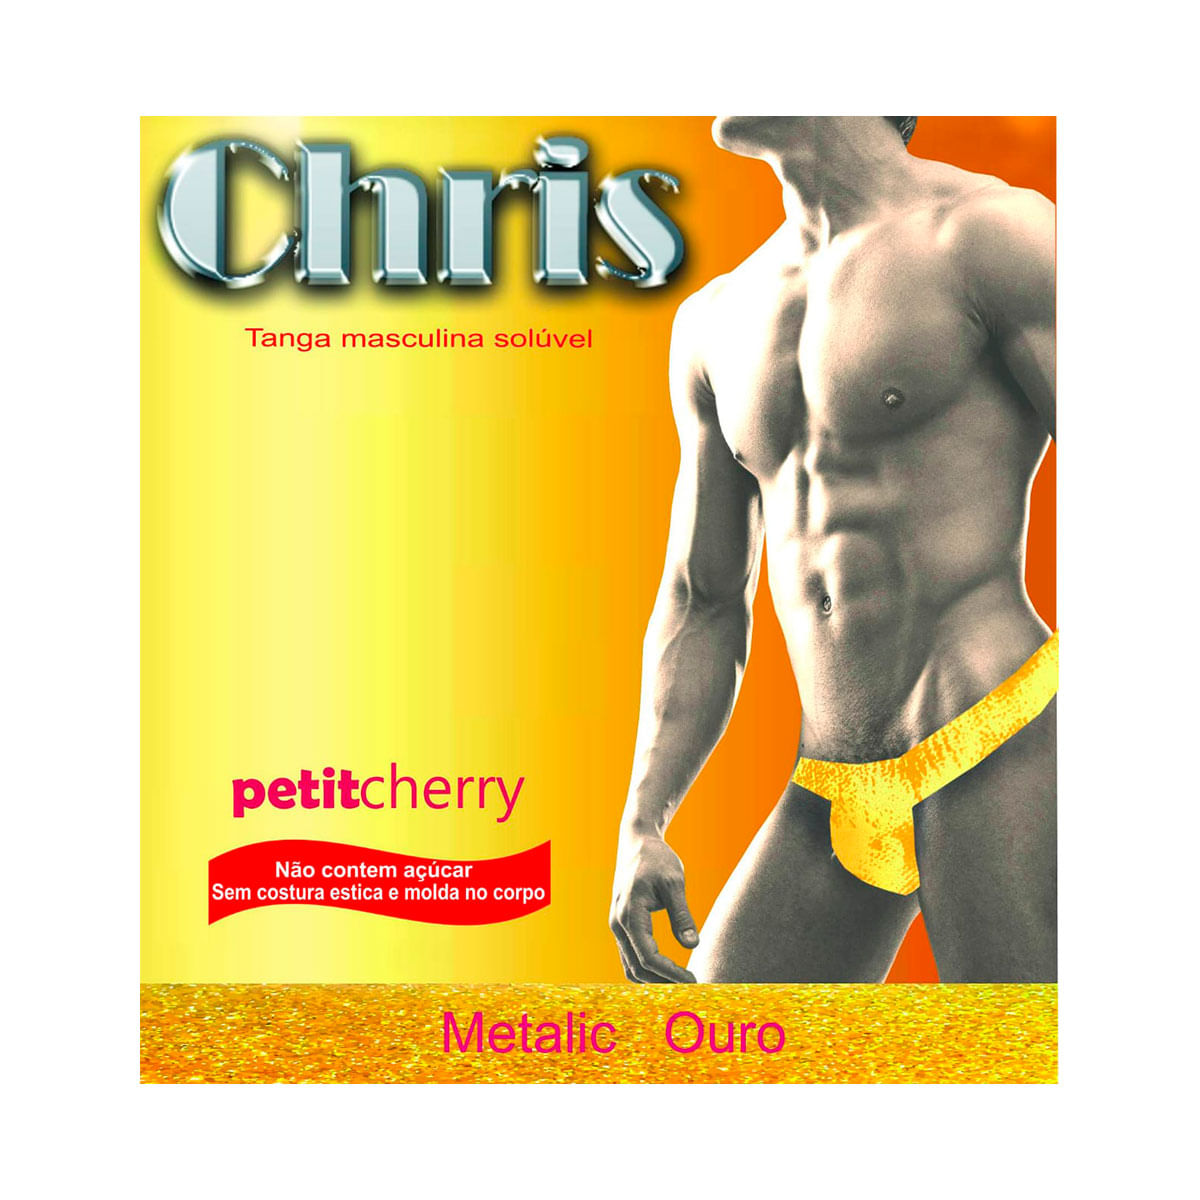 Chris Tanga Solúvel Masculina Metalic sem Costura de Gelatina Petit Cherry